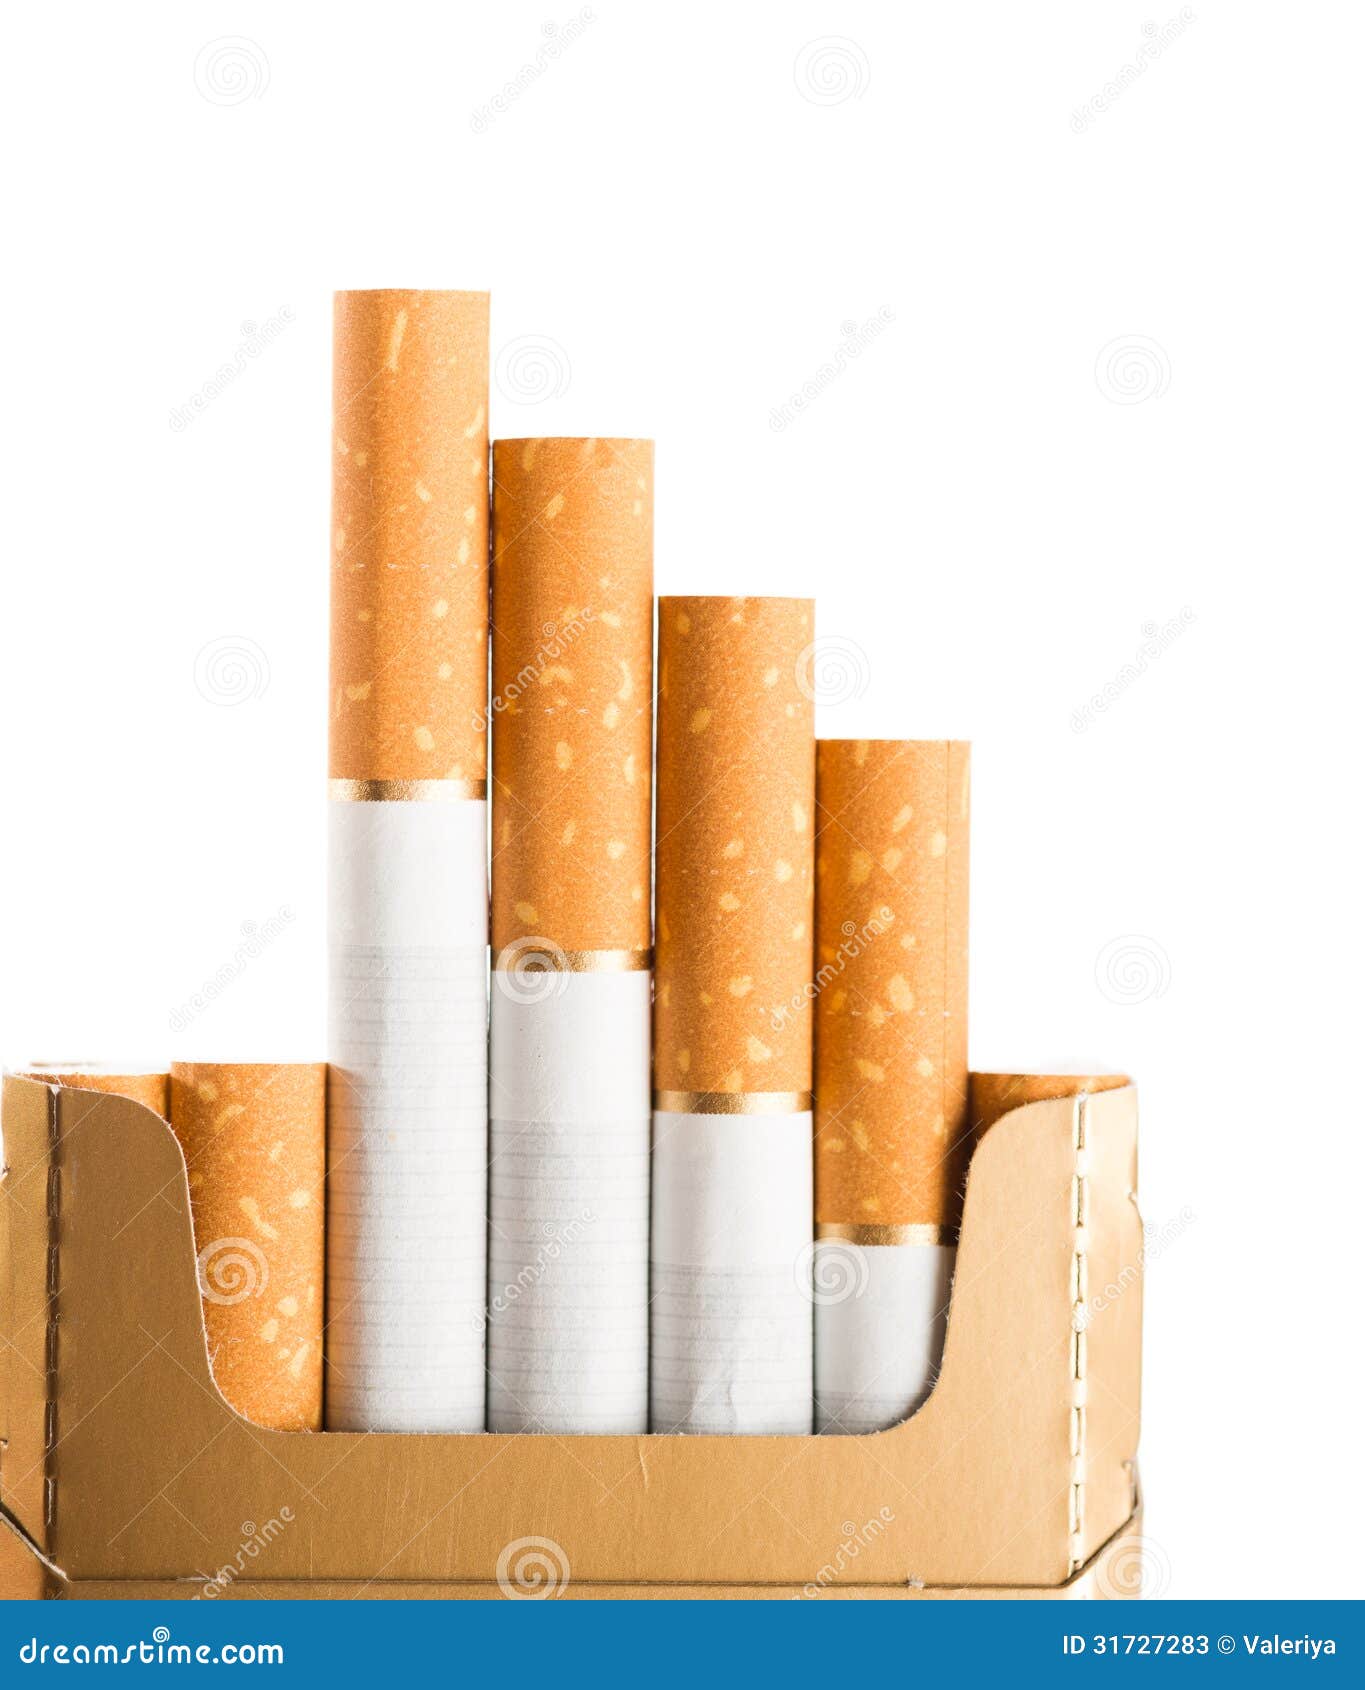 Tabac En Cigarettes Avec Un Filtre Brun Image stock - Image du